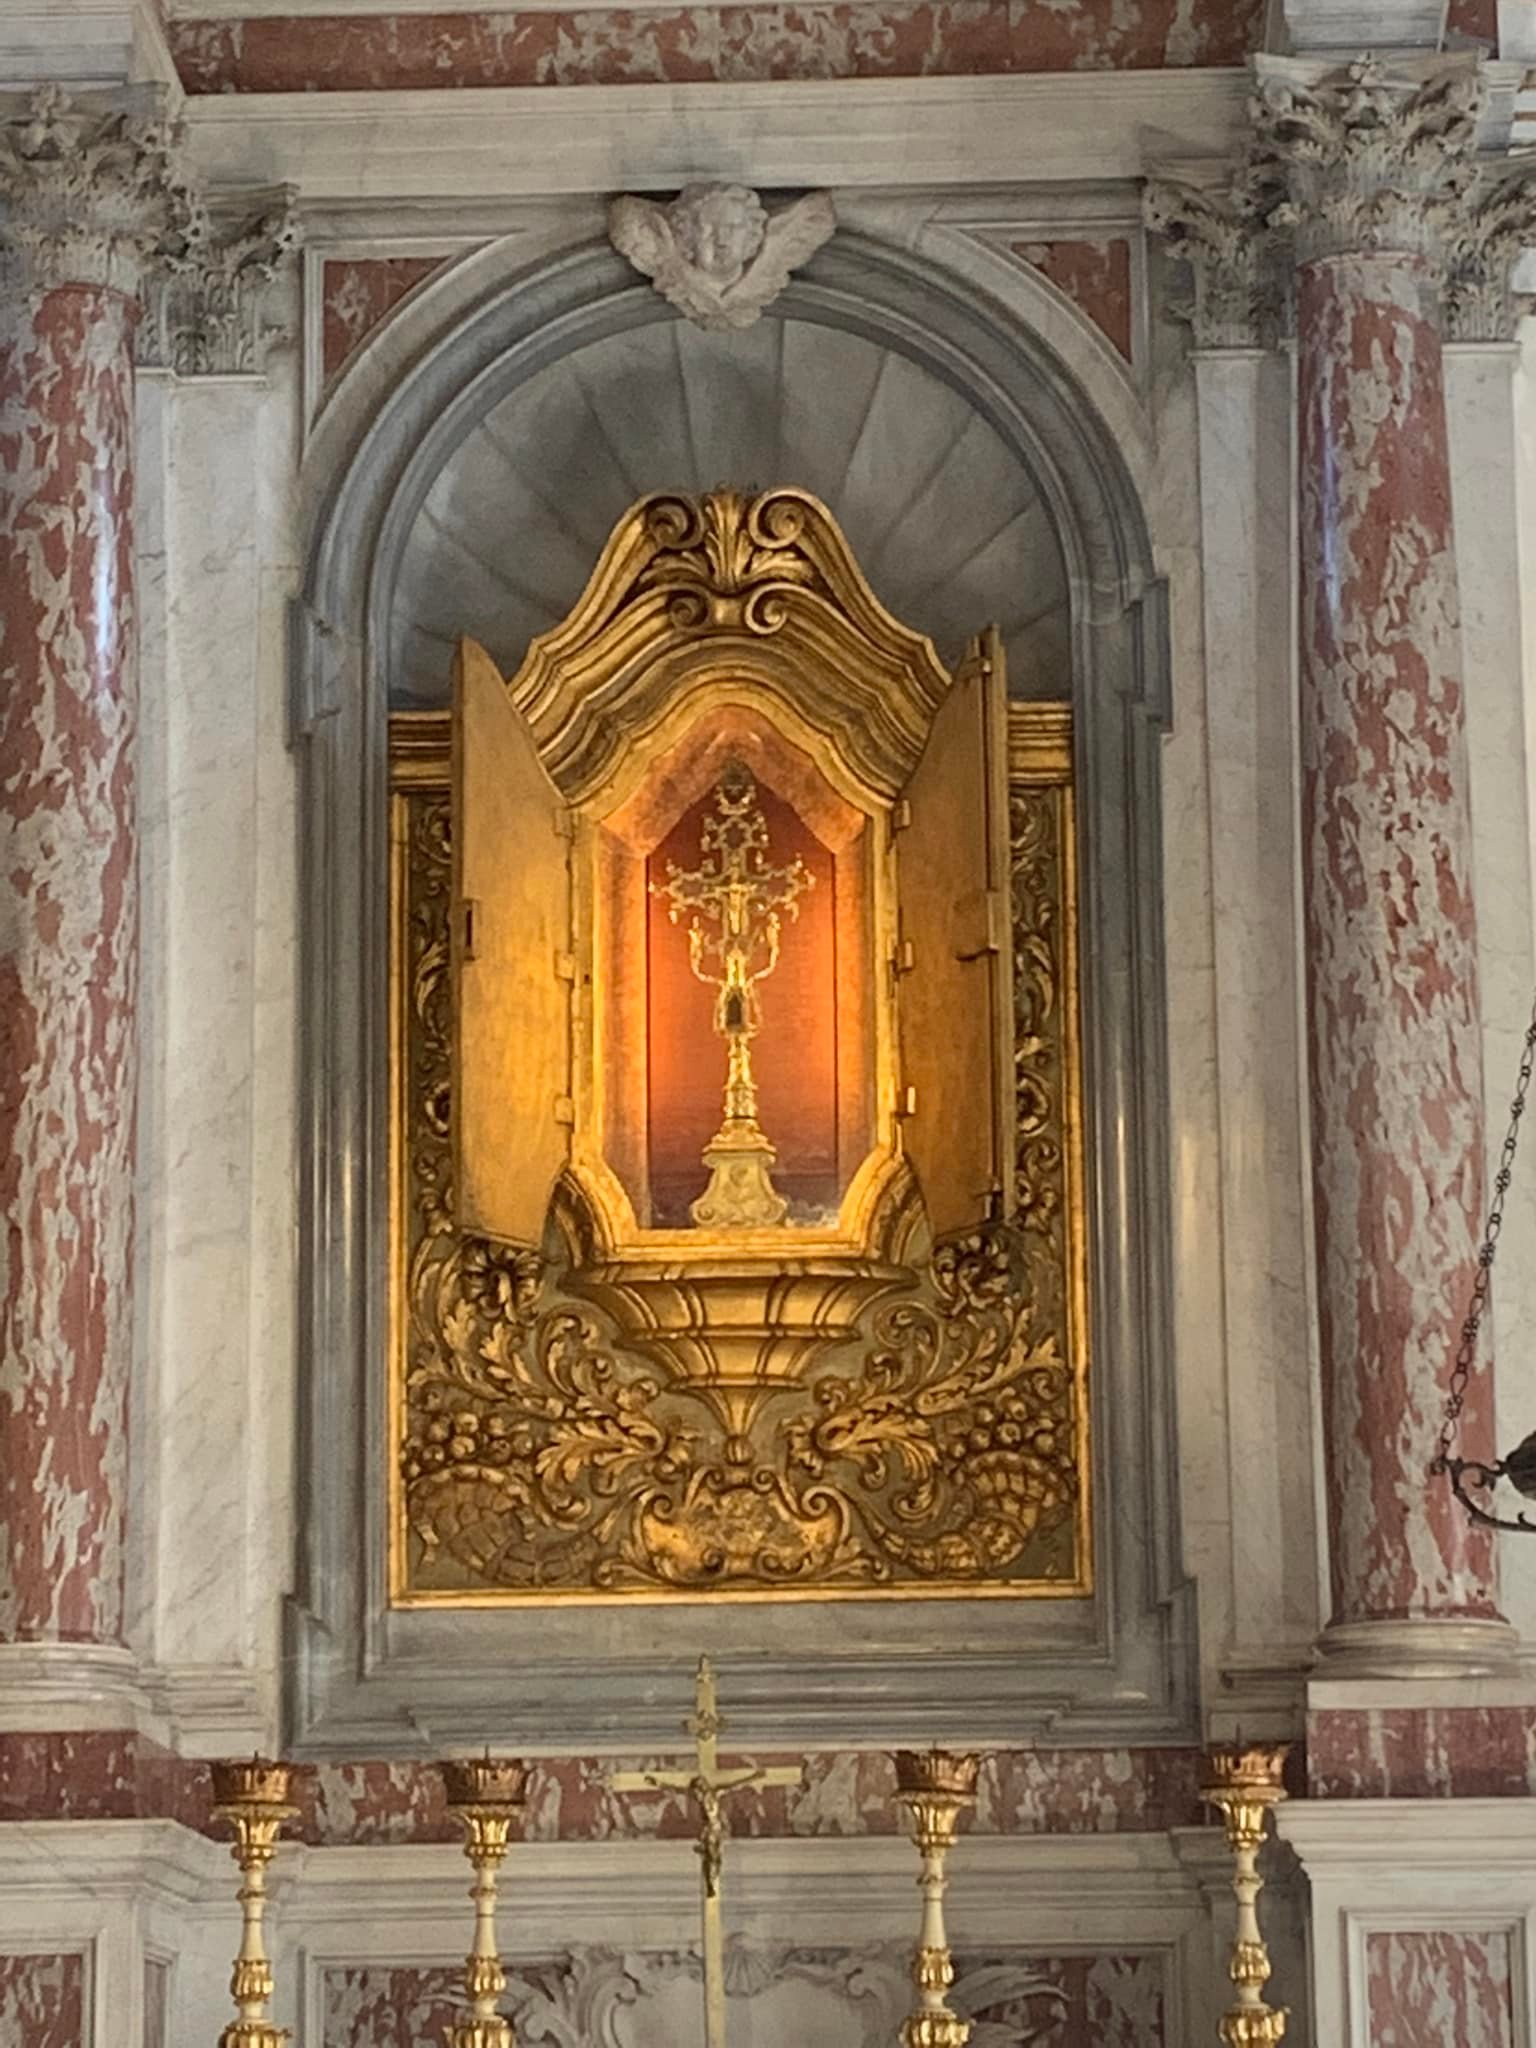 Lo sai che a Venezia c’è la reliquia della Santa Croce?